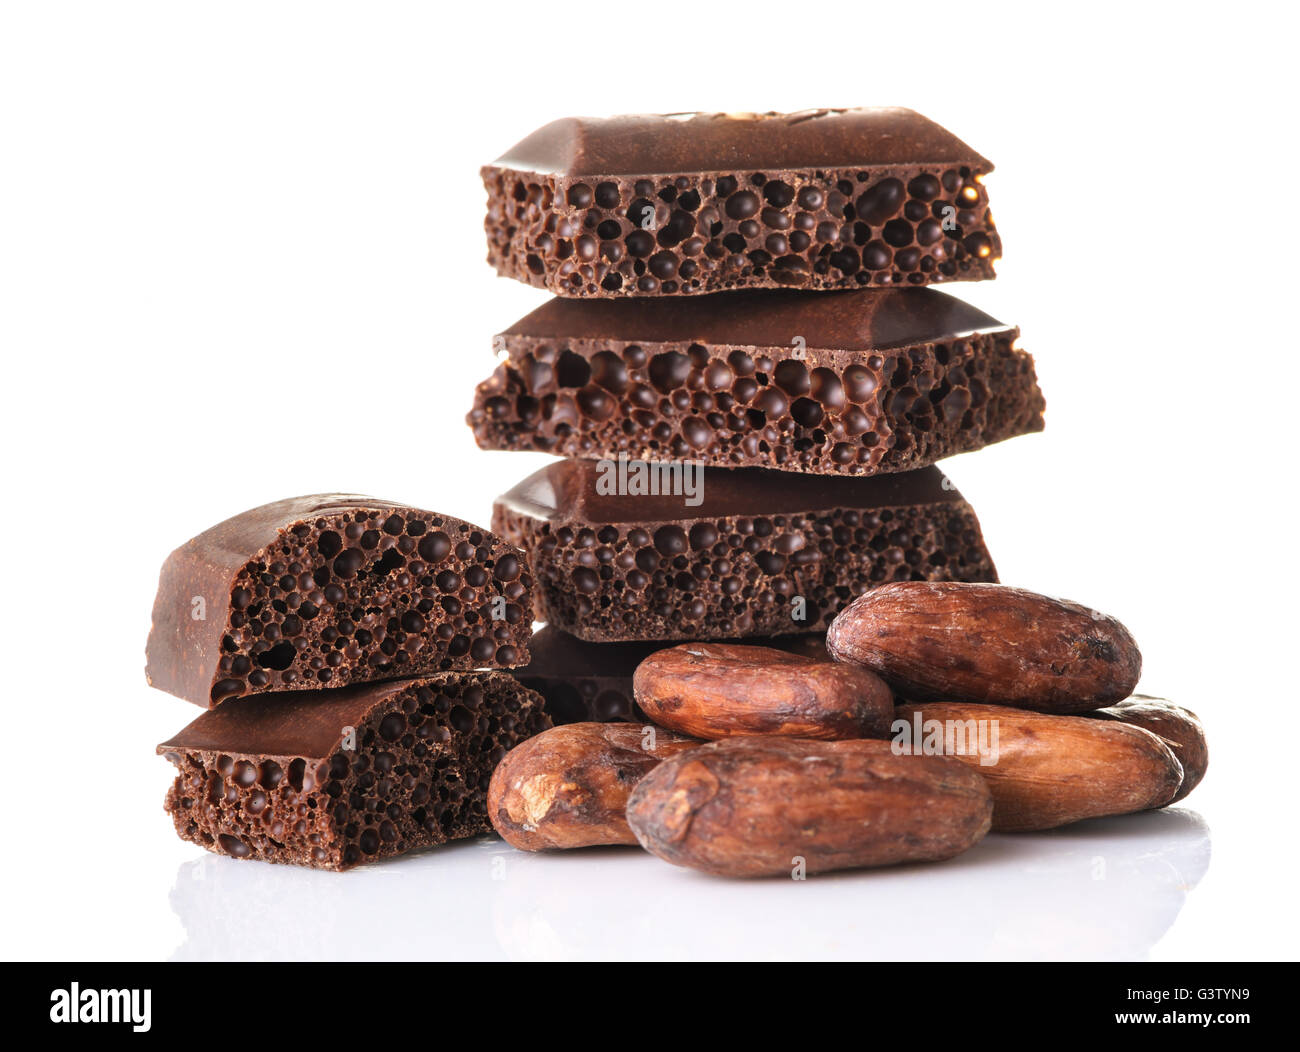 Poröse Schokoladenstücke und Kakaobohnen auf einem weißen Hintergrund hautnah Stockfoto